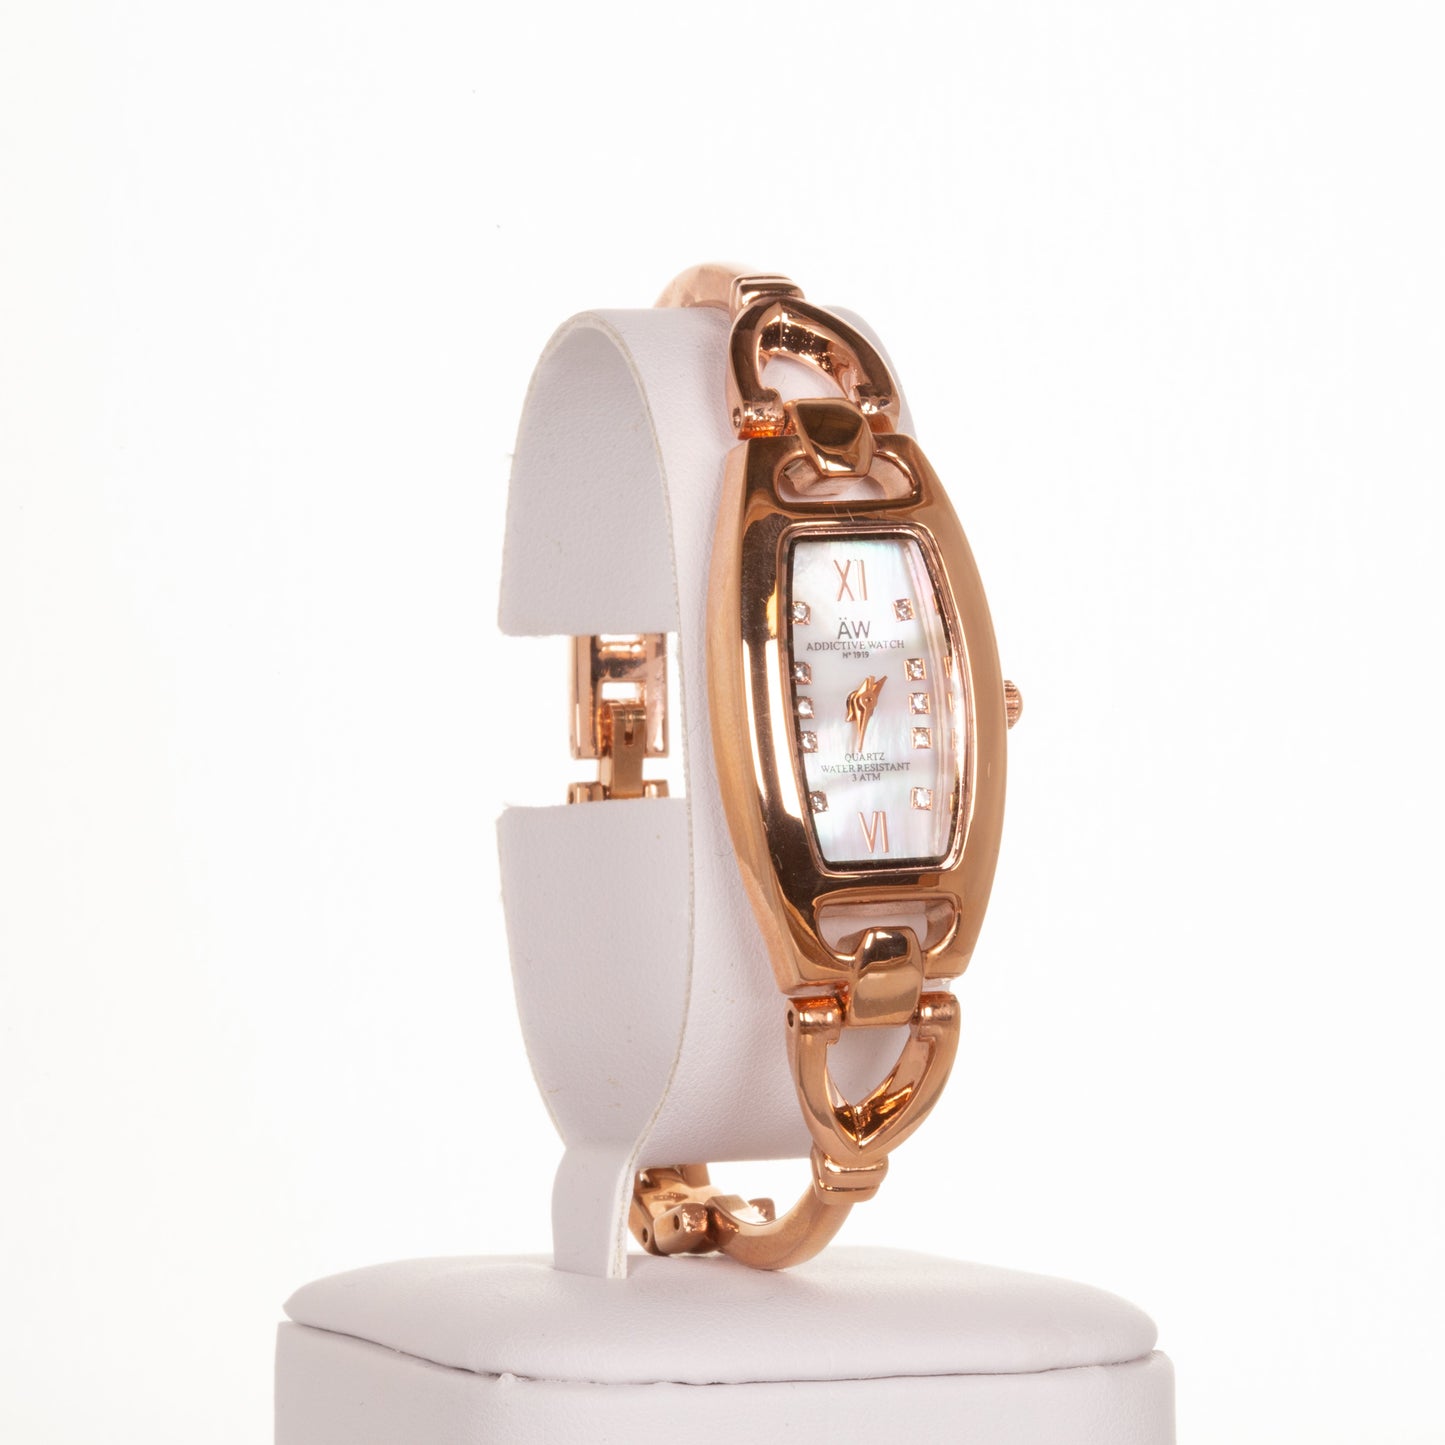 AW dámske hodinky vo farbe ružového zlata s trojuholníkovým remienkom a kryštálmi kremeňa